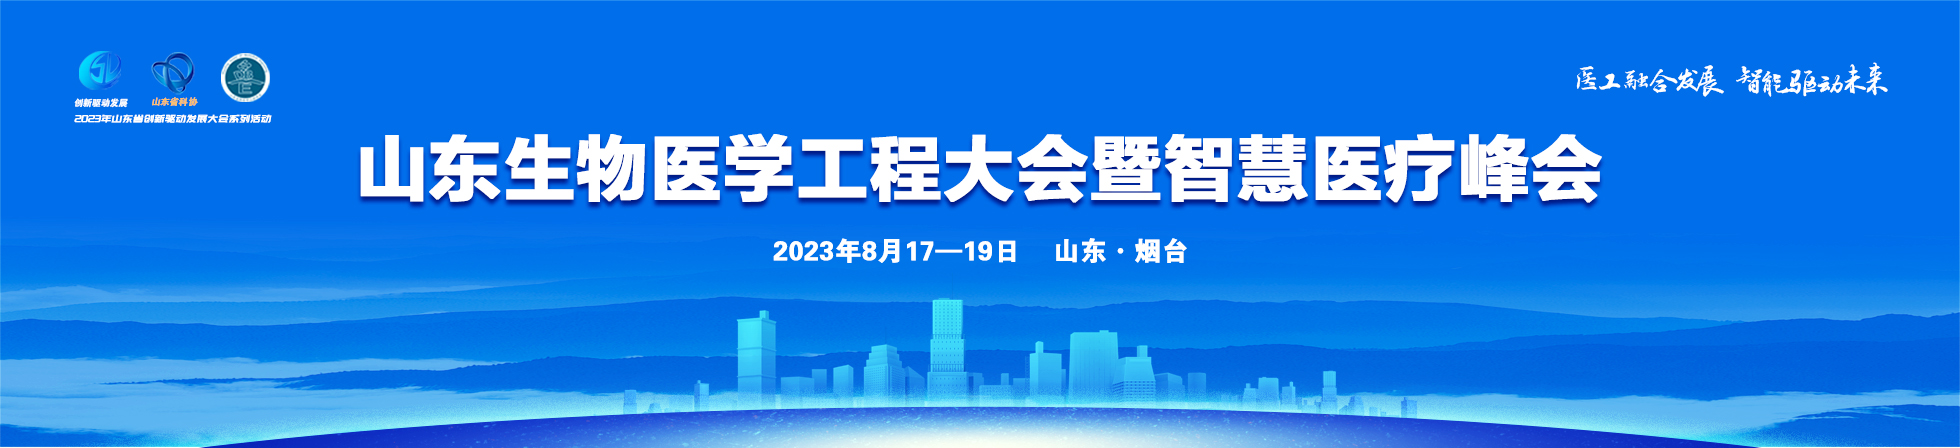 2023山东生物医学工程大会暨智慧医疗峰会